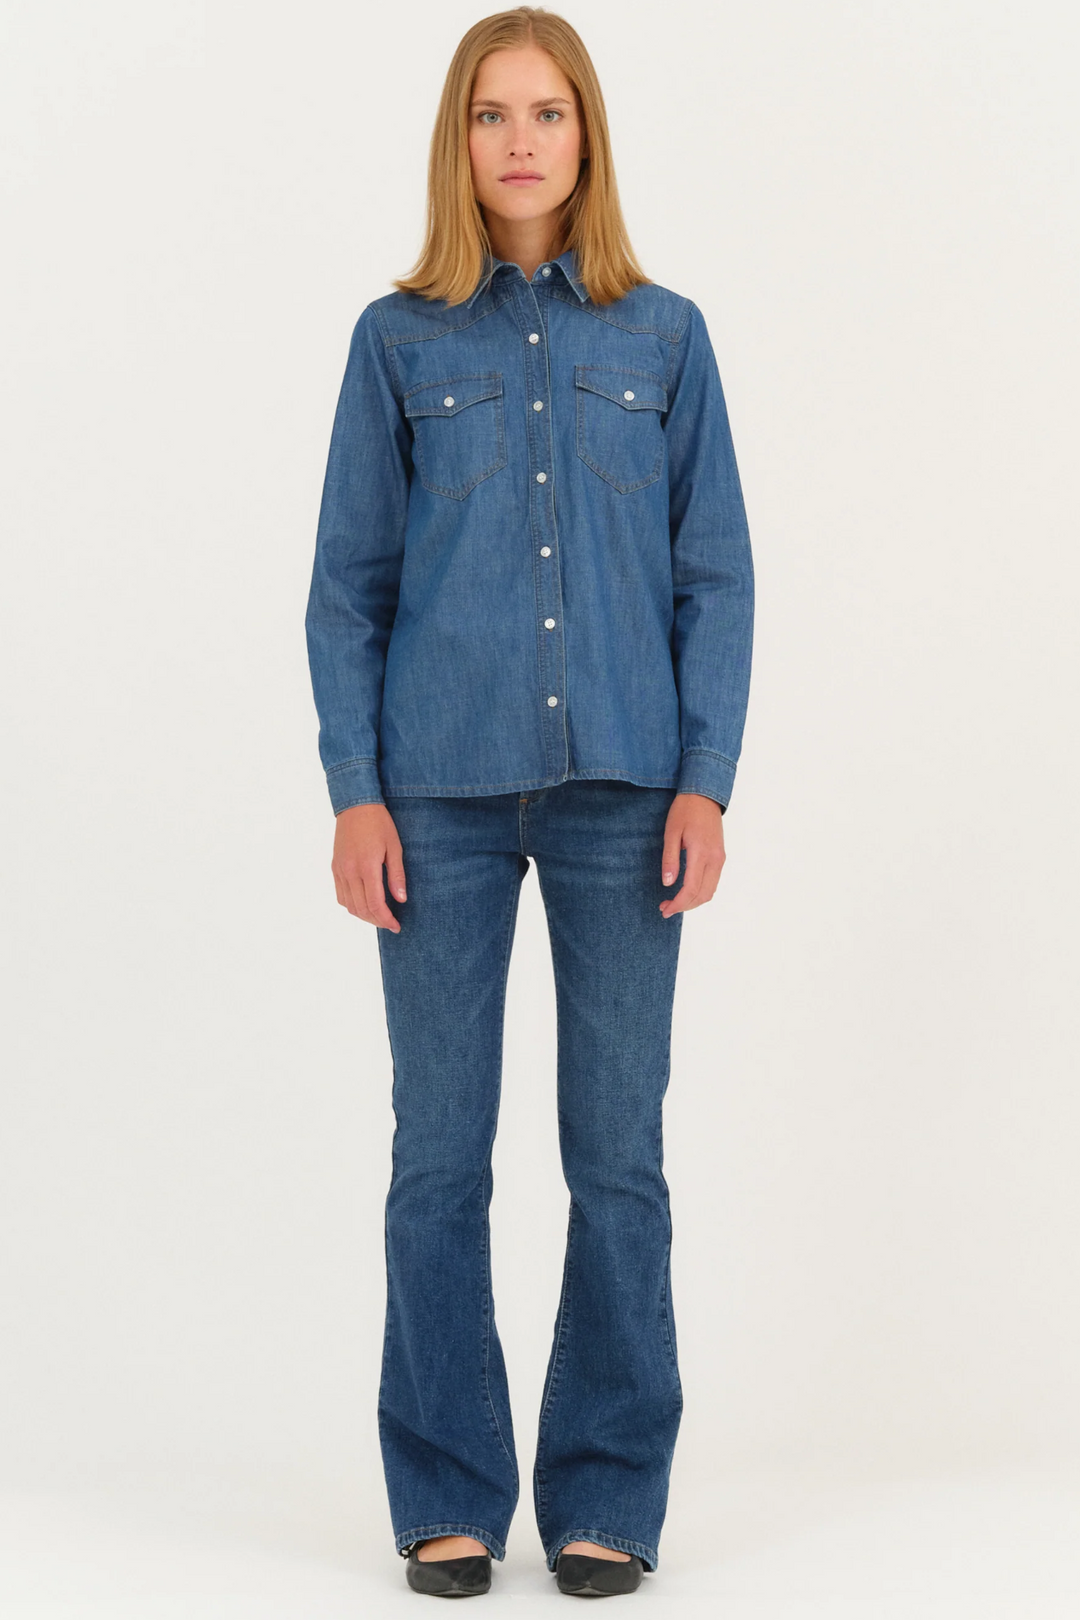 Skjorte | IVY Copenhagen Ora Shirt Wash Vintage, denim blue